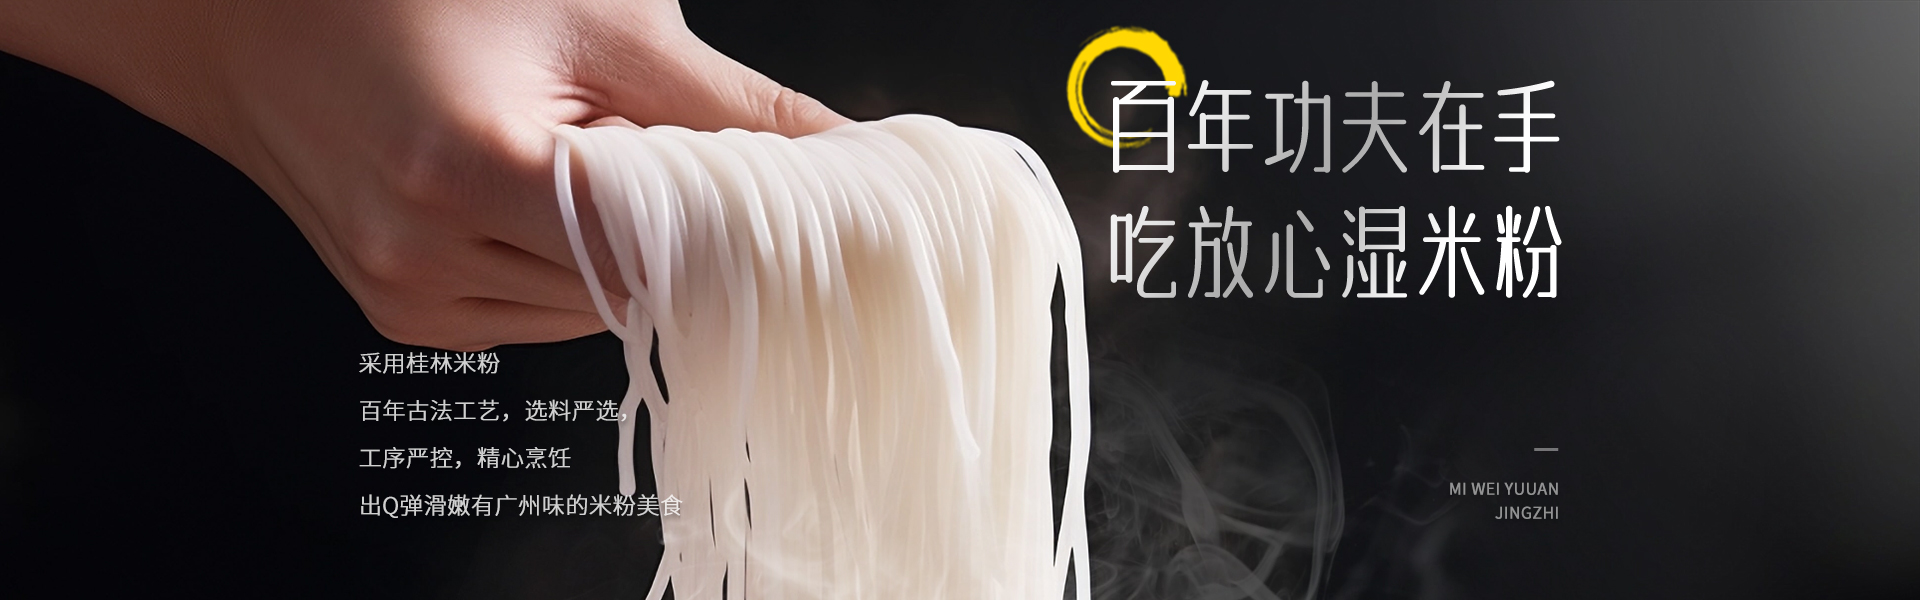 桂林米粉工艺手法精选优质大米